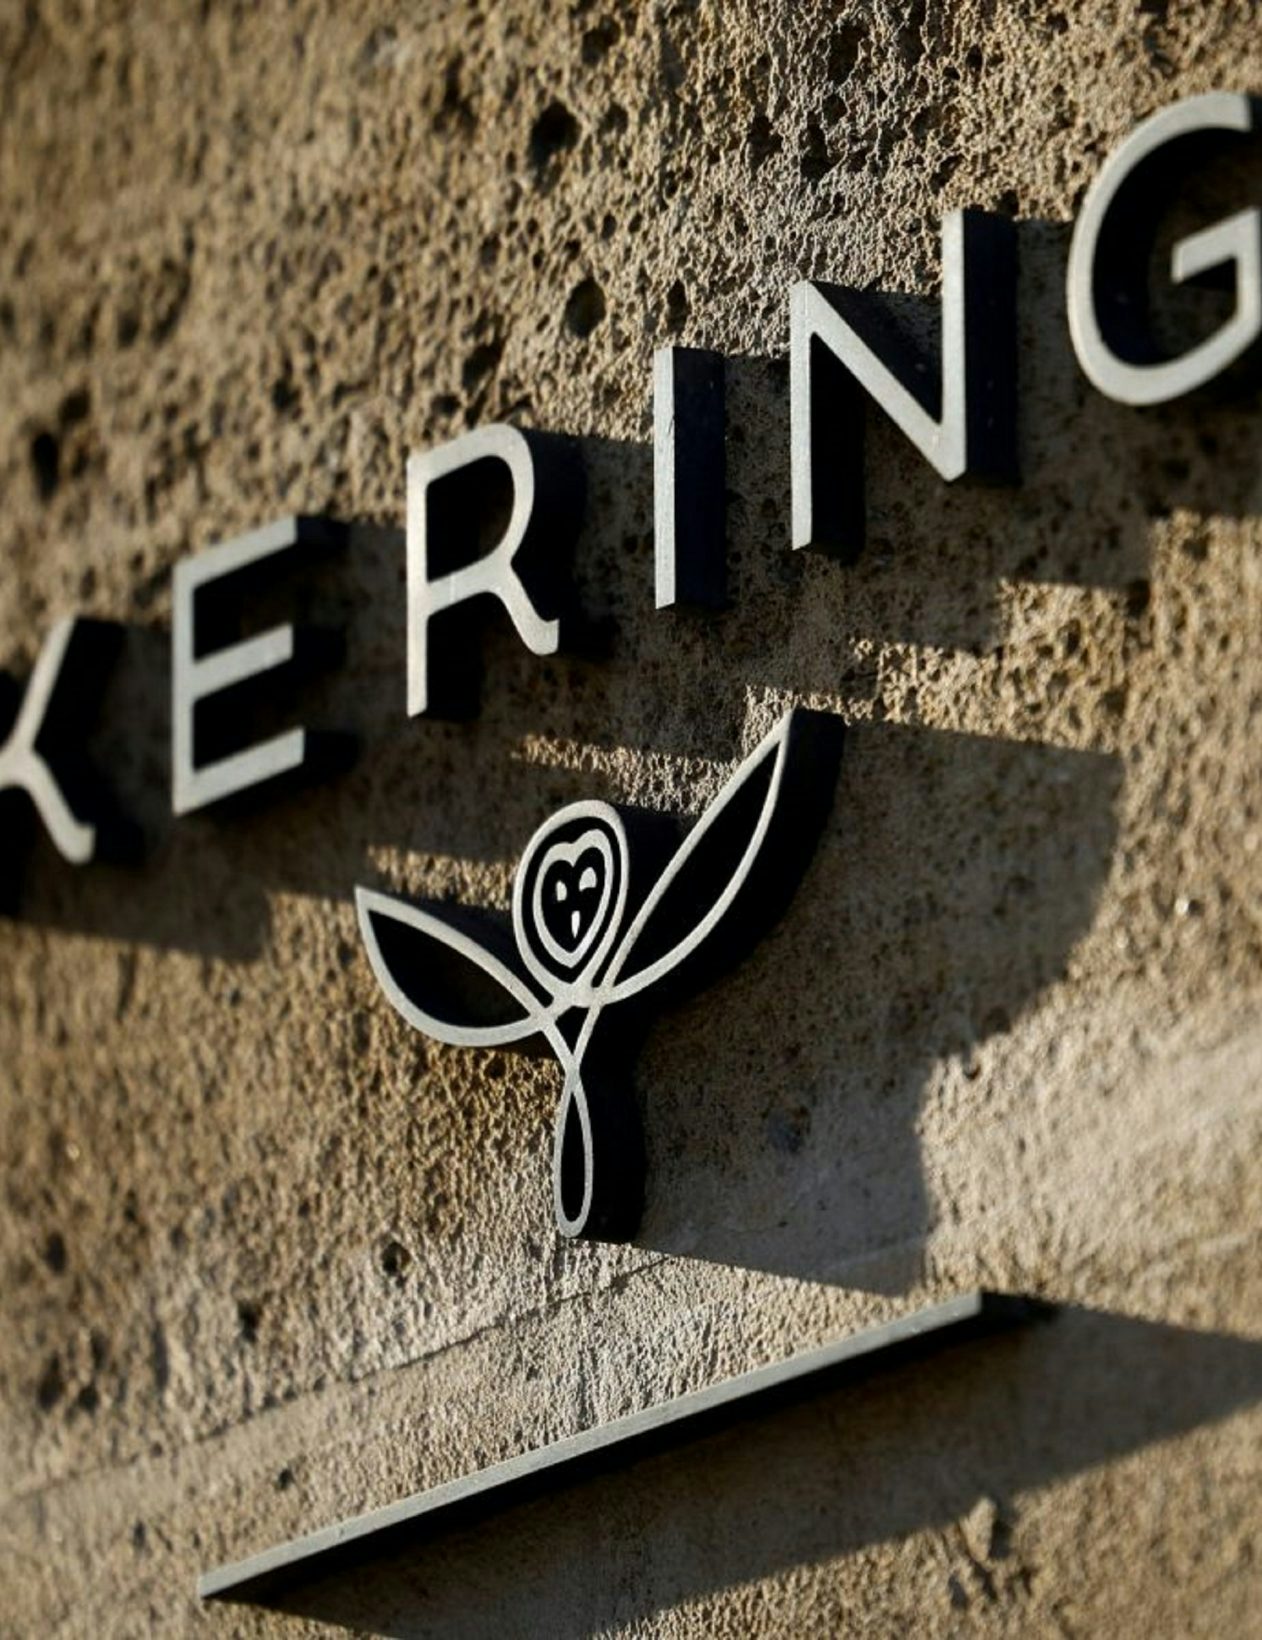 Kering annonce un emprunt obligataire de 3,8 milliards d’euros